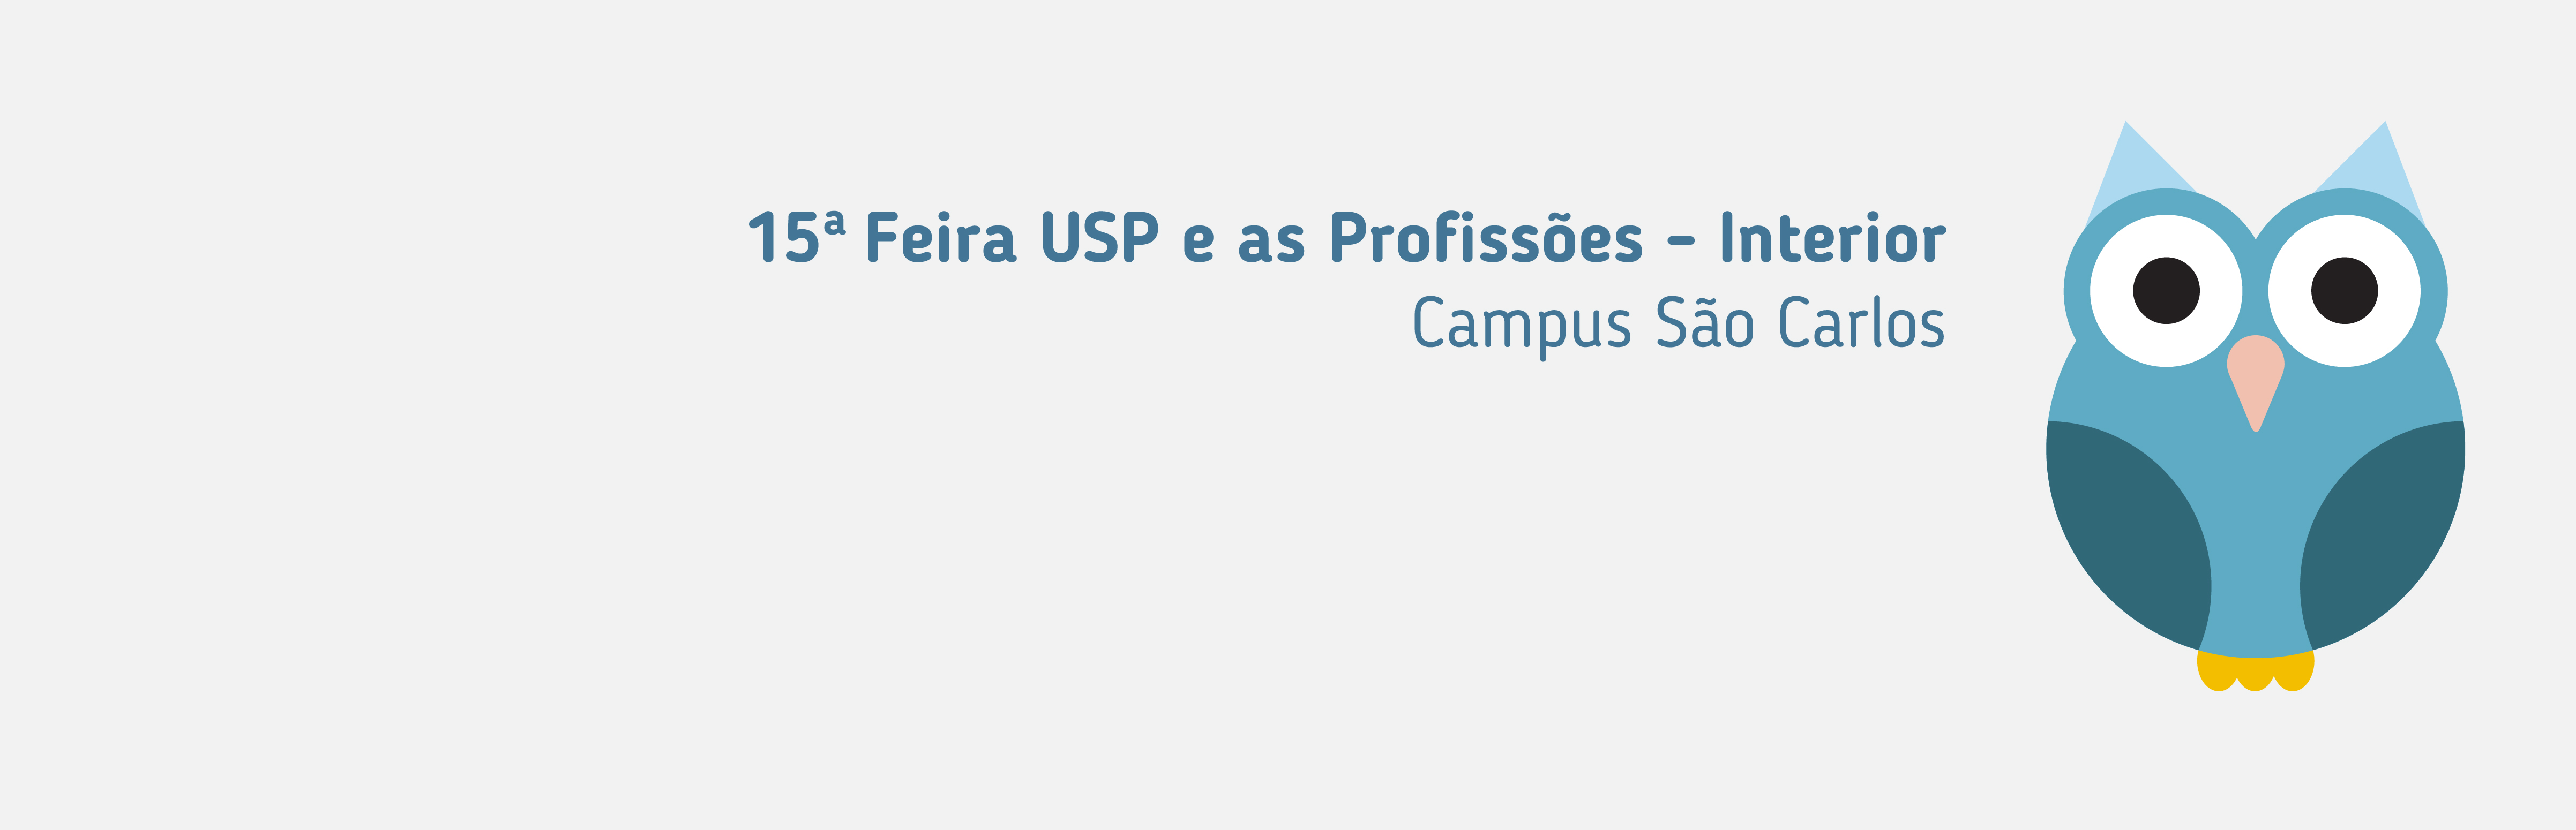 USP realiza feira de profissões em São Carlos